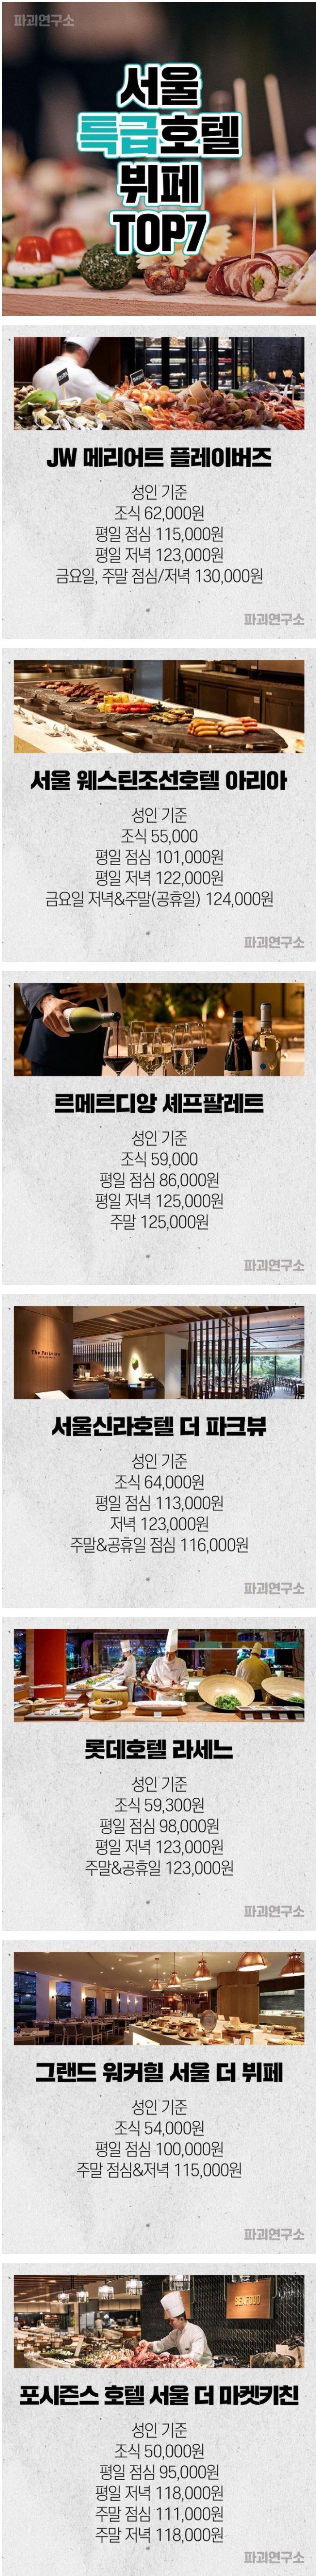 서울 특급 호텔 뷔페 TOP 7